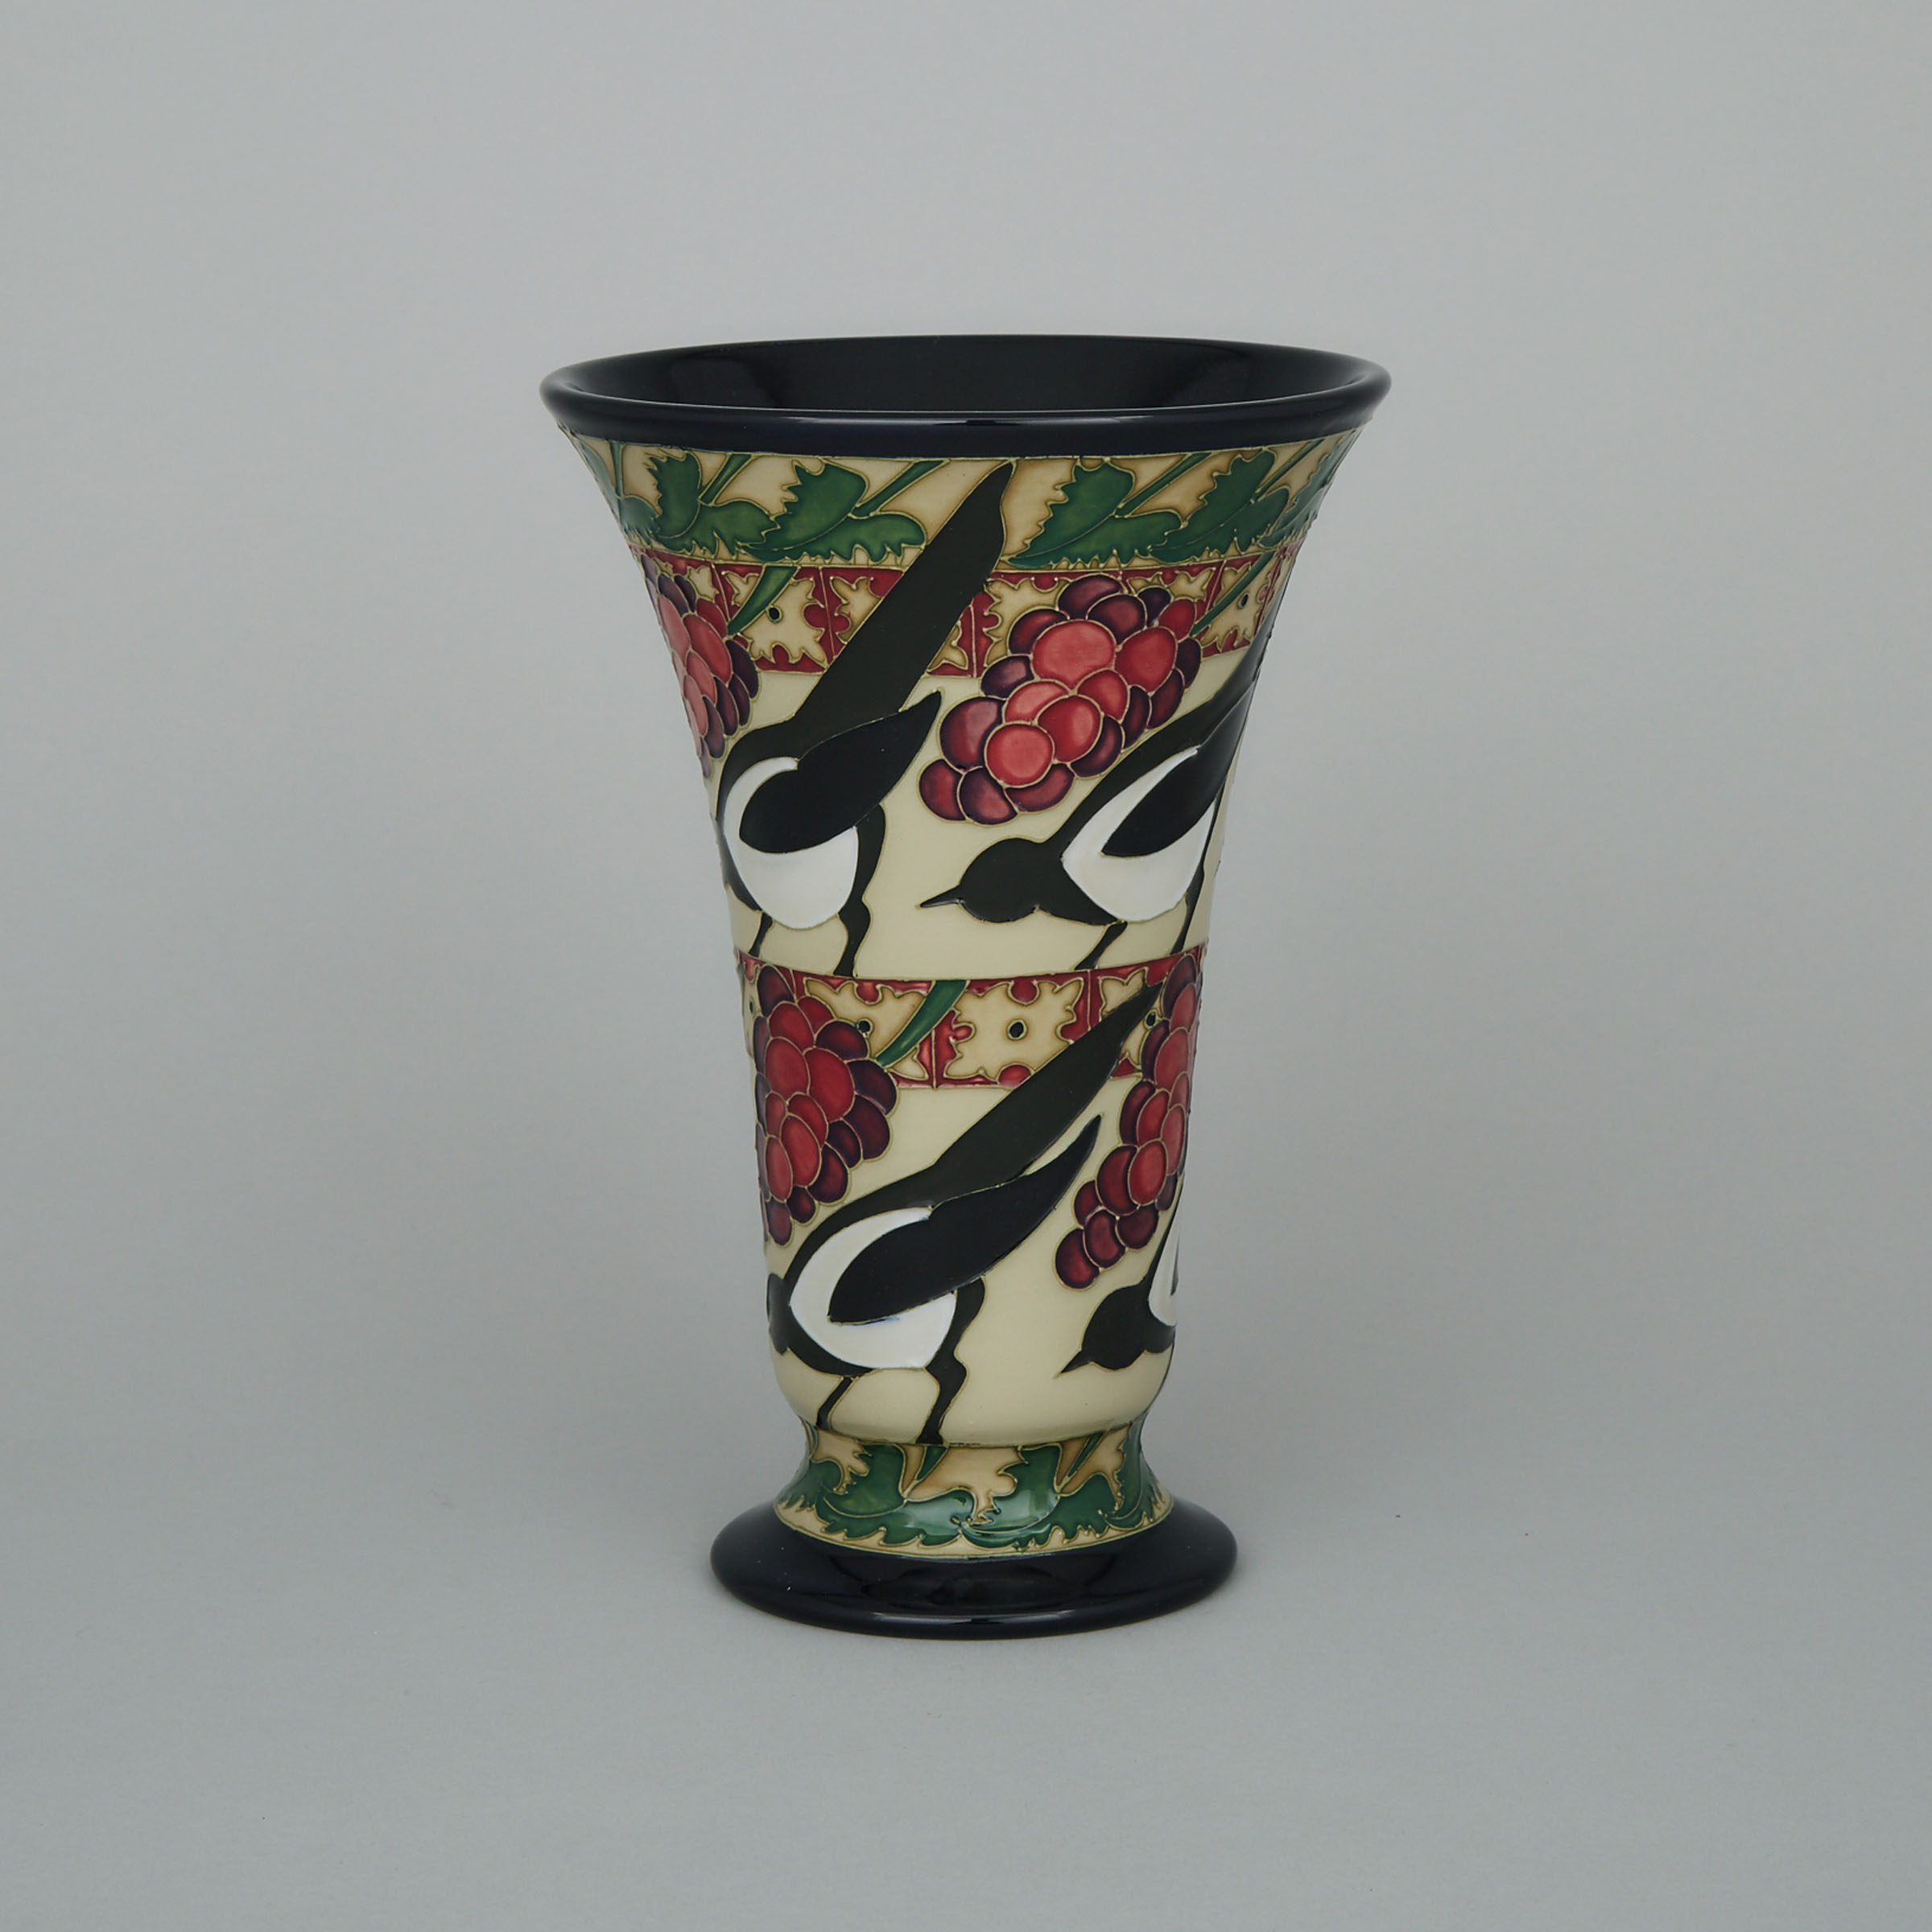 Moorcroft 'The Secret' Vase, 51/150, Kerry Goodwin, 2010